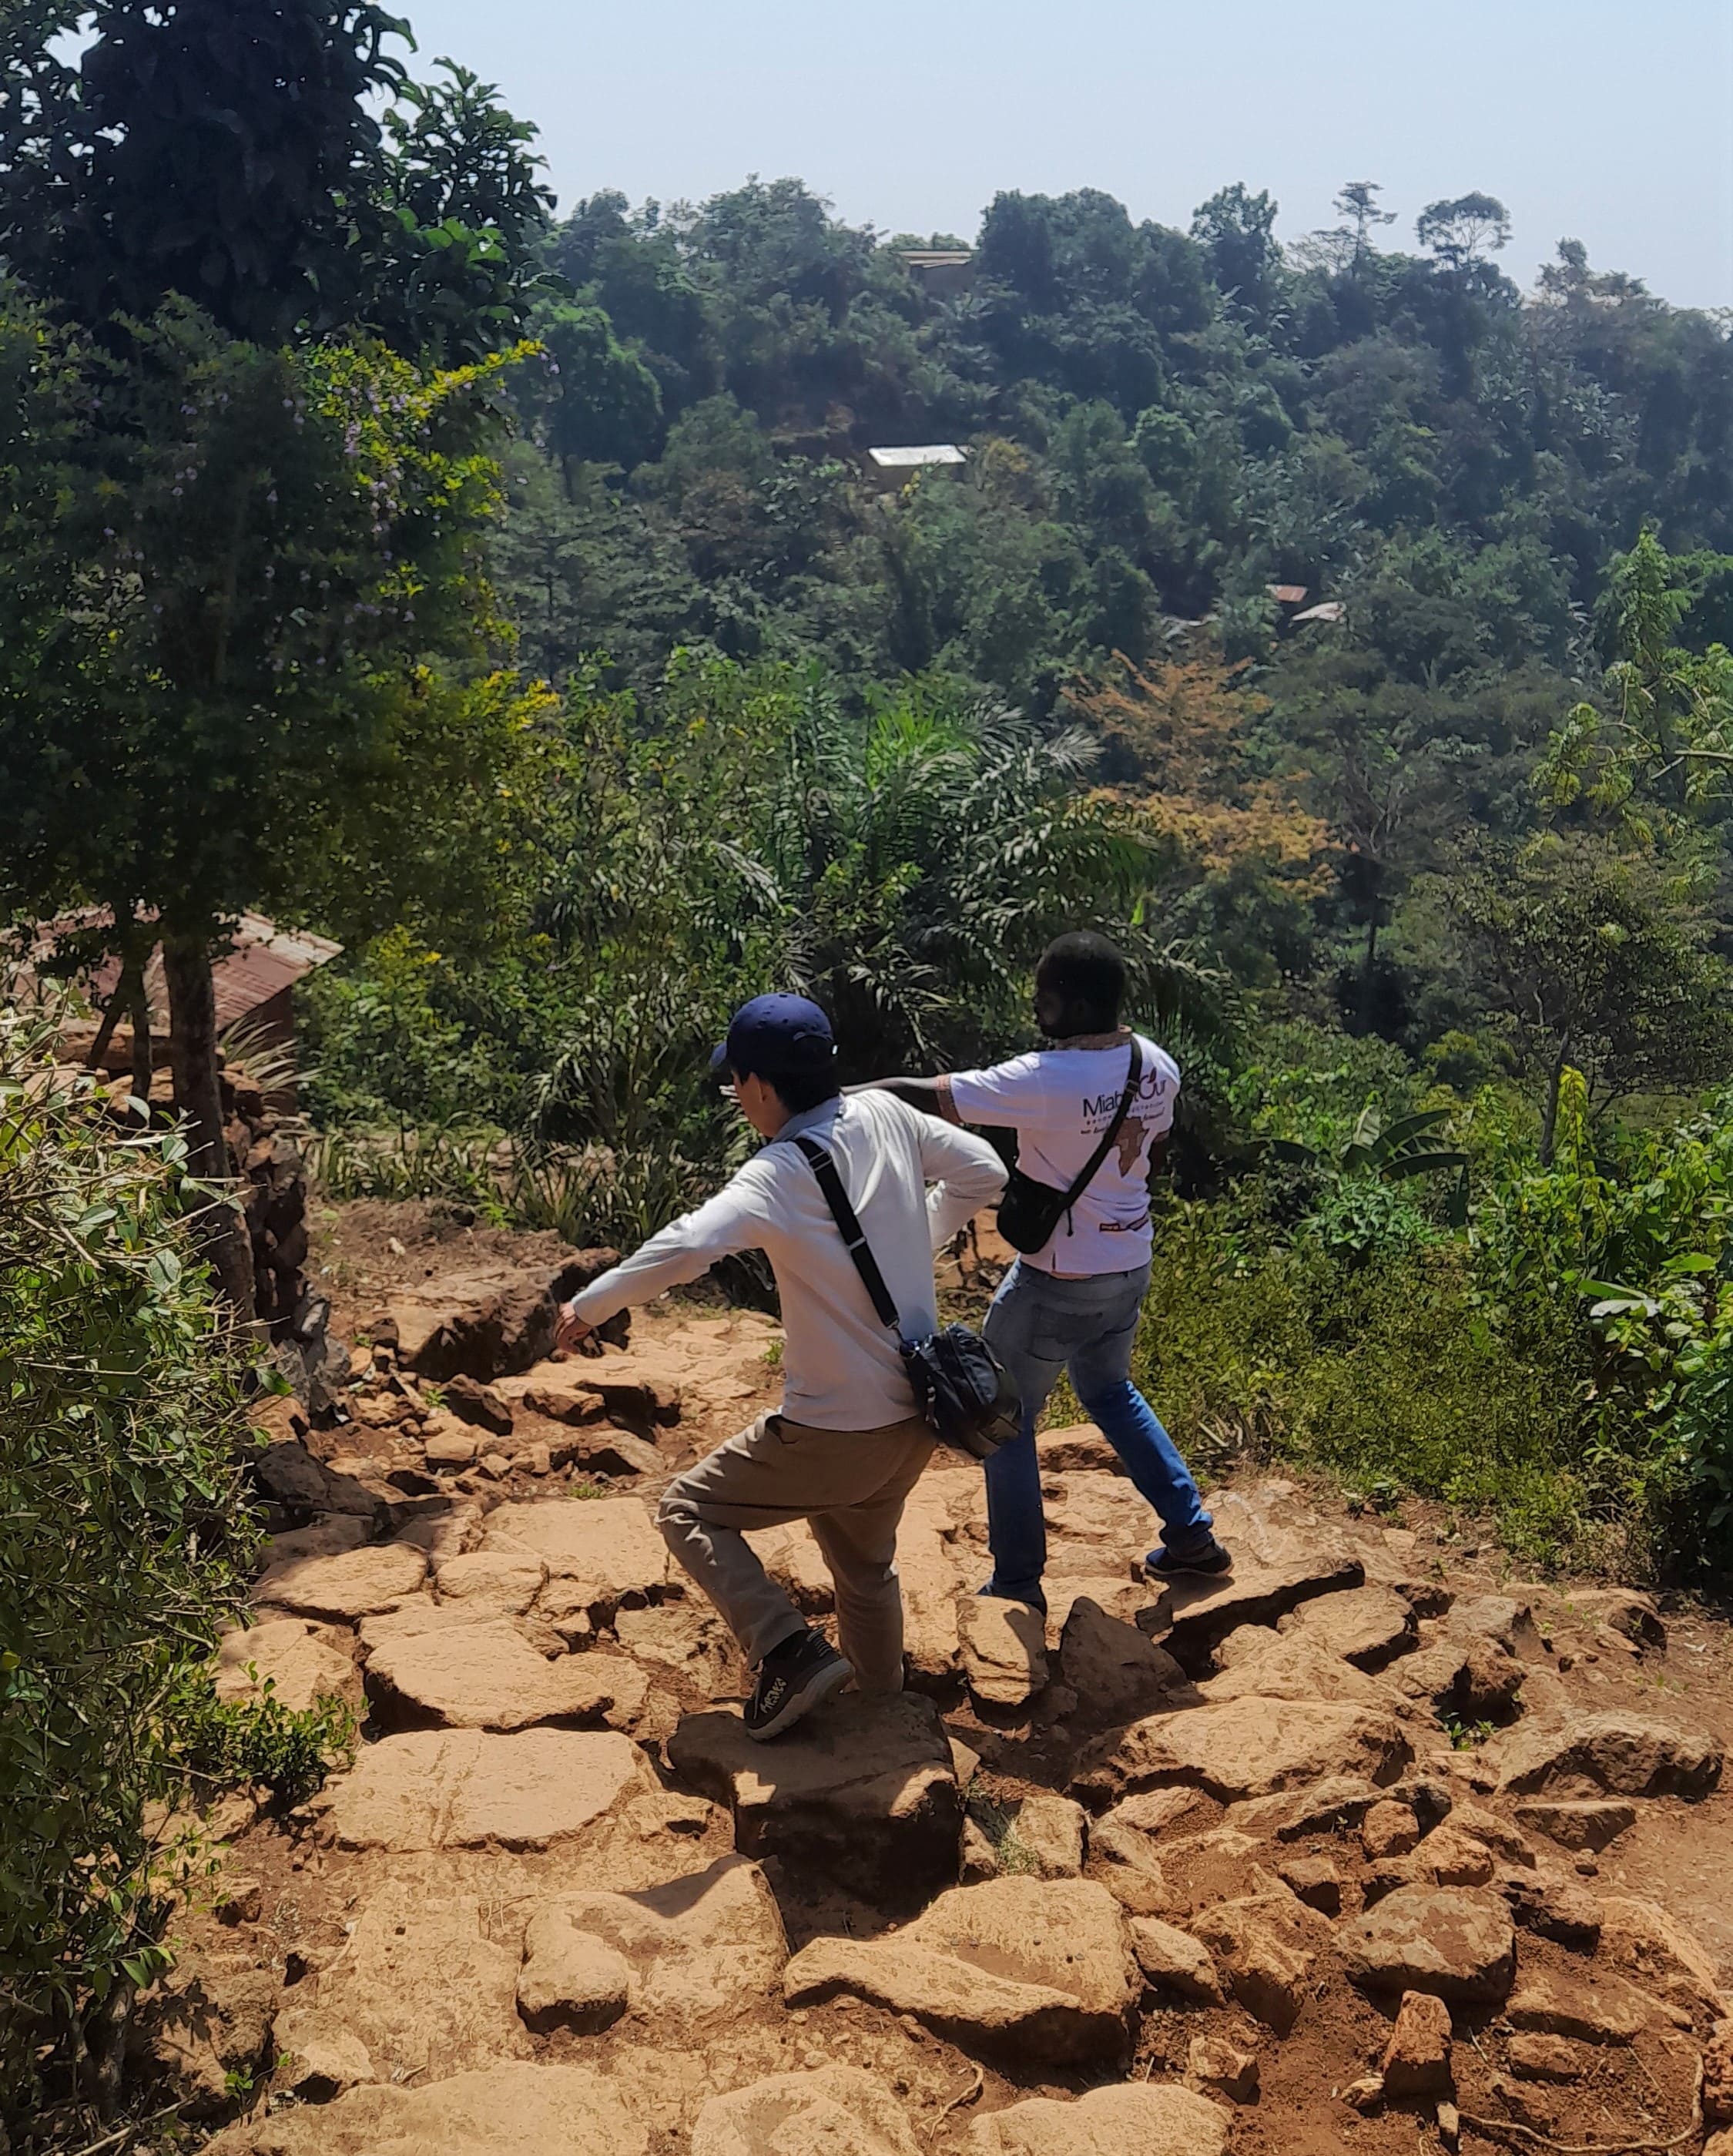 randonnée avec des guides professionnels au Togo